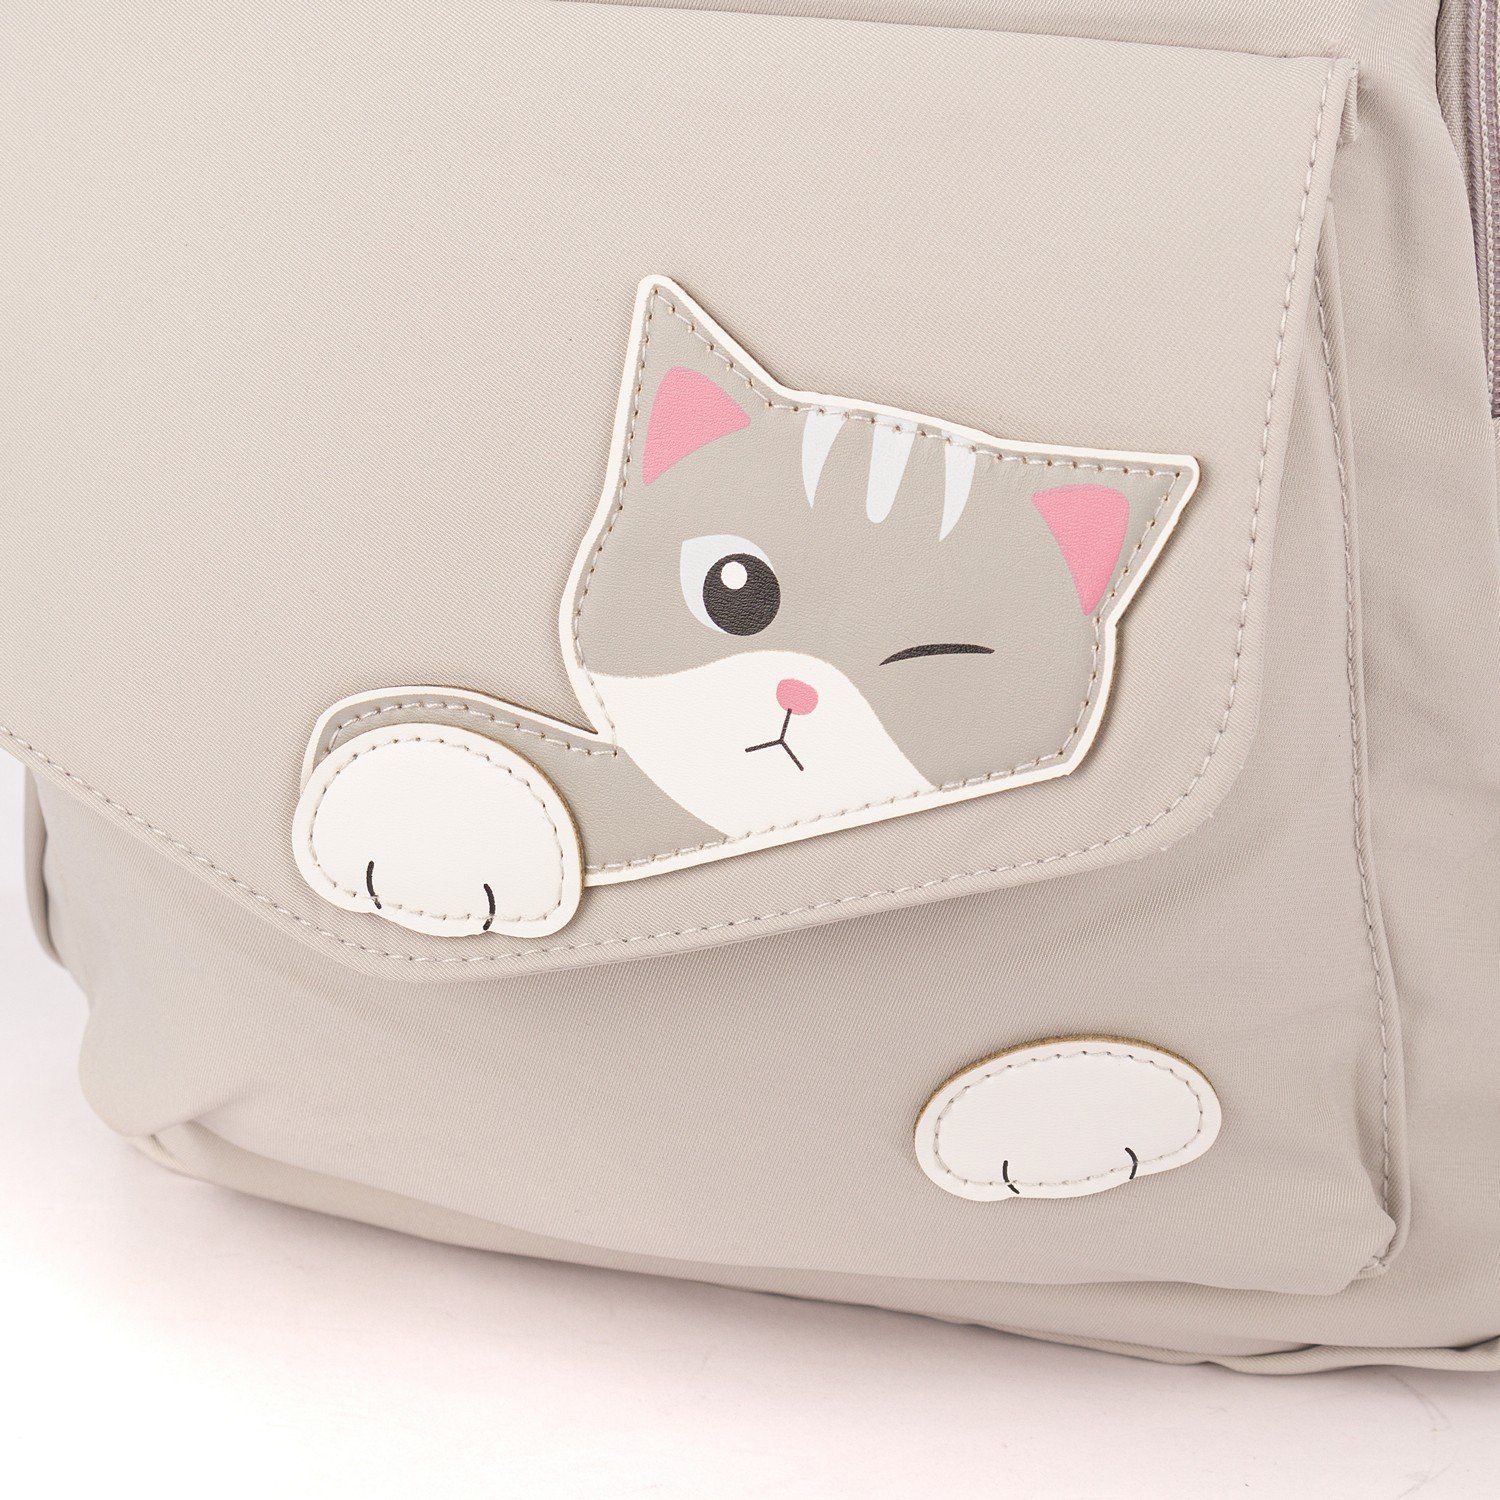 Рюкзак мужской городской, бежевый, с котами, с USB и чехлом от дождя, объем 28 л